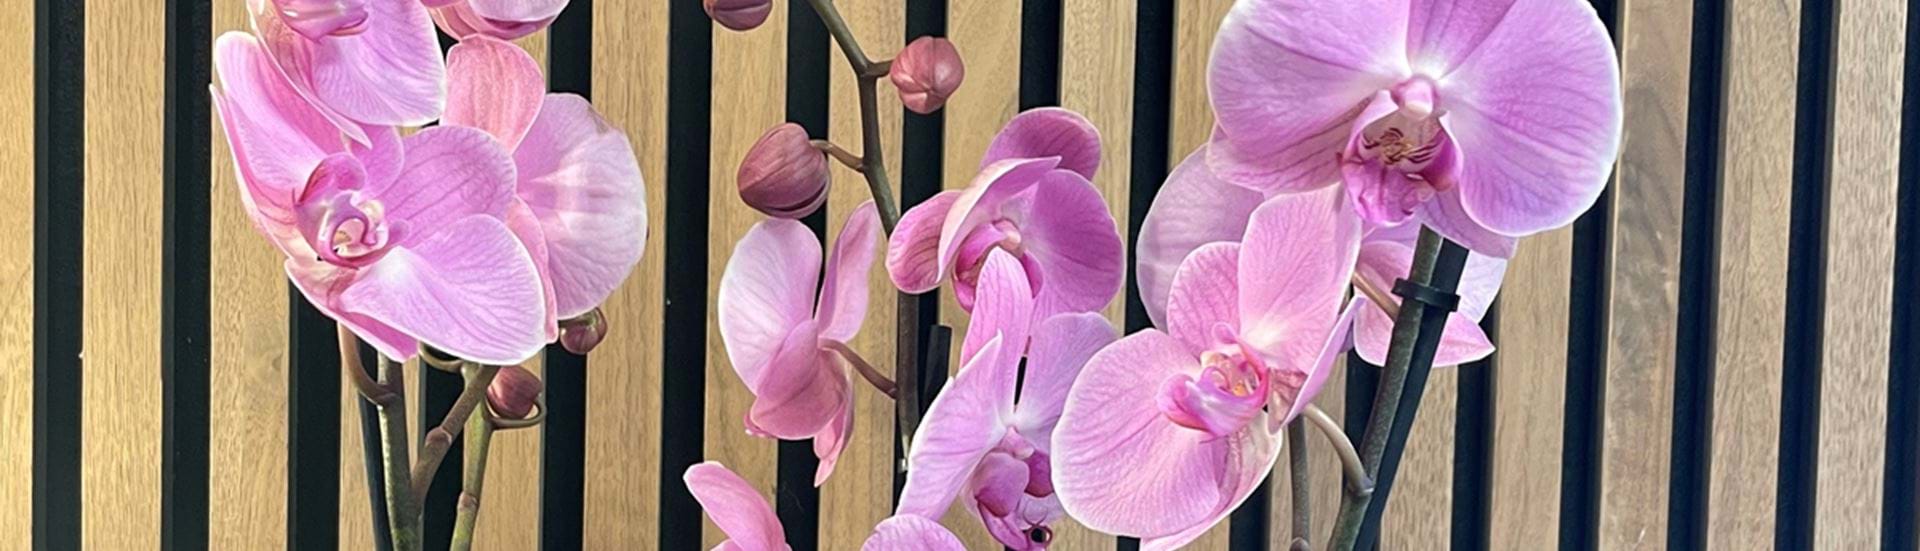 Planter hos Bugge Blomster i Videbæk. Køb blandt andet en smuk orkide i en flot krukke.